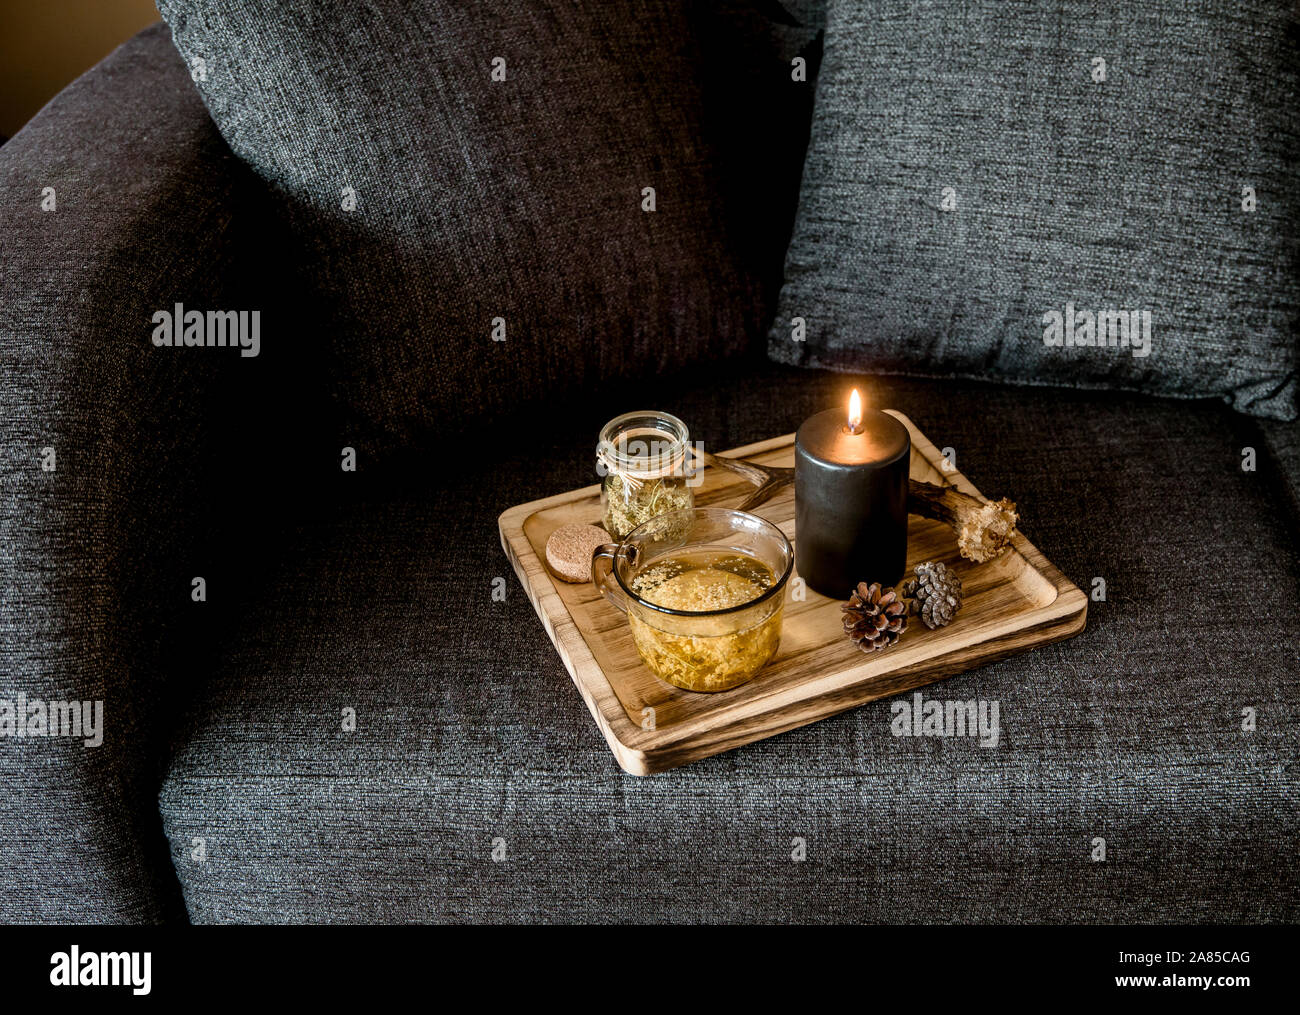 Nahaufnahme der minimalistischen skandinavischen Stil Farbe: schwarz details Home Decor Konzept. Holz Fach mit dampfenden Tee, beleuchtete schwarze Kerze, d Stockfoto